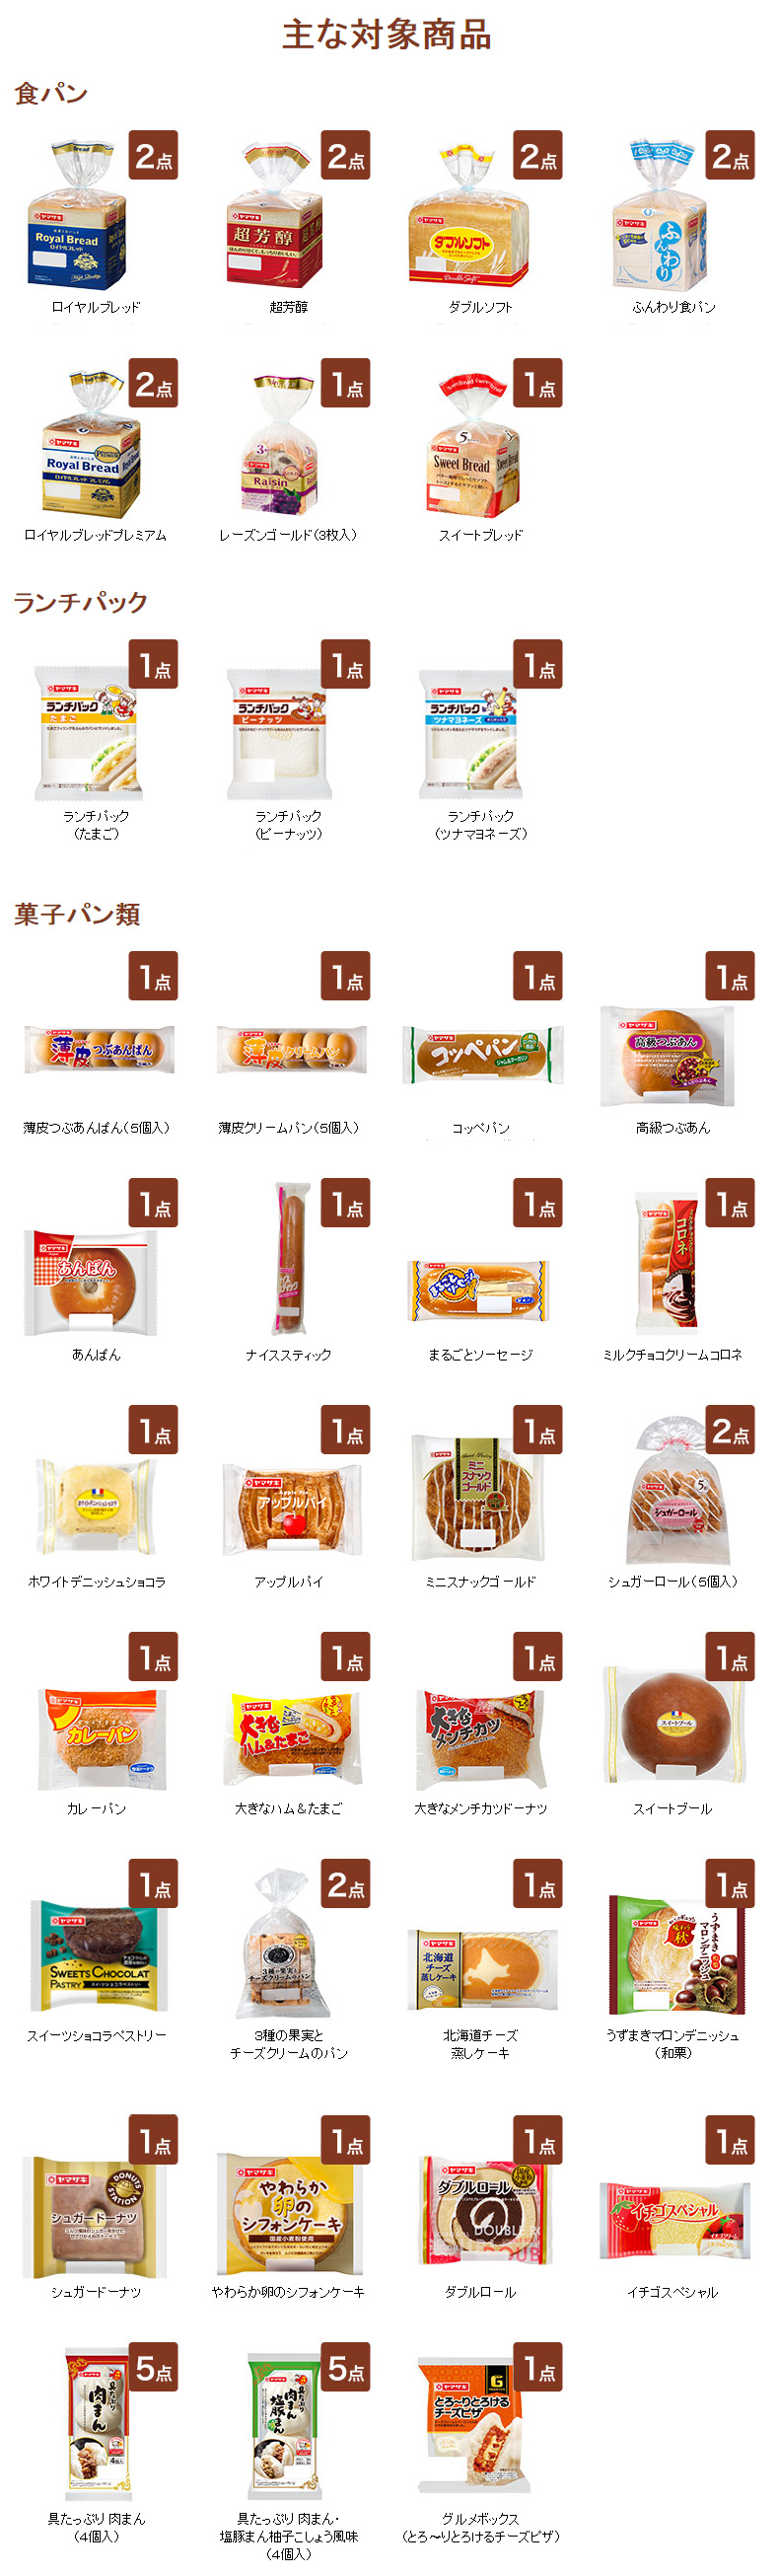 ヤマザキ 2017秋のパン祭り 懸賞キャンペーン 対象商品